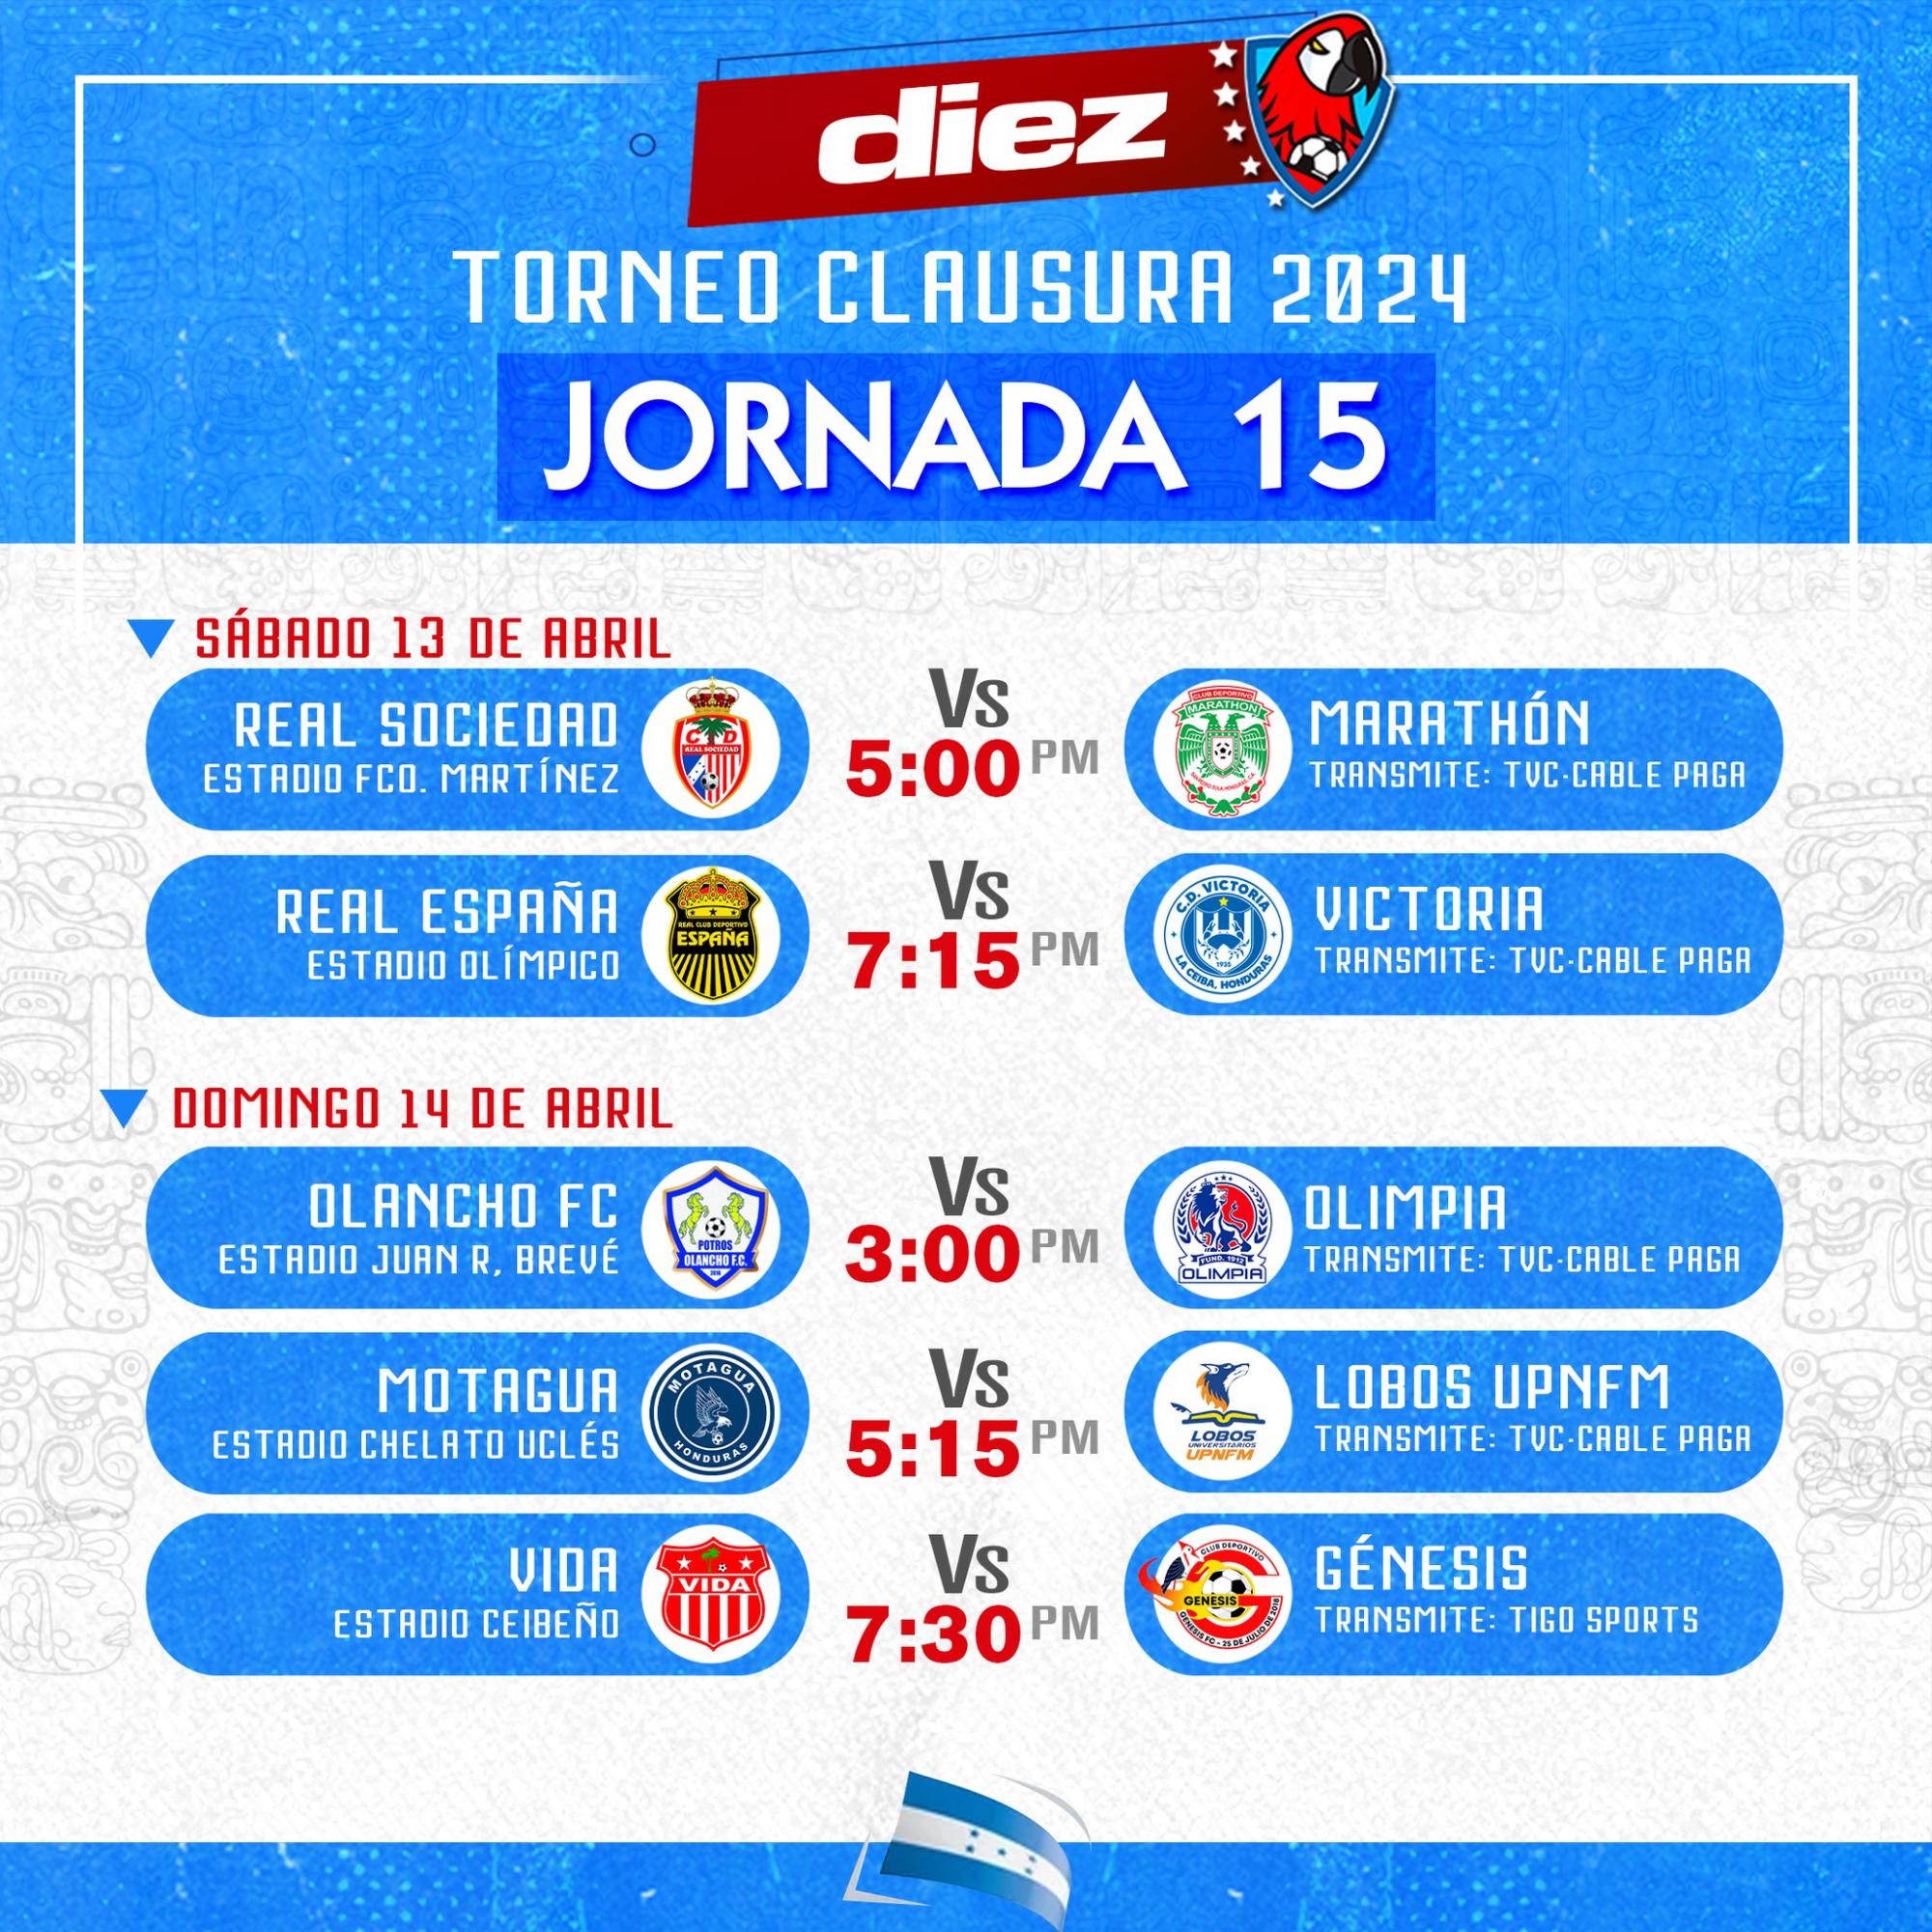 Olancho FC, Motagua y CDS Vida serán locales en la jornada dominical.